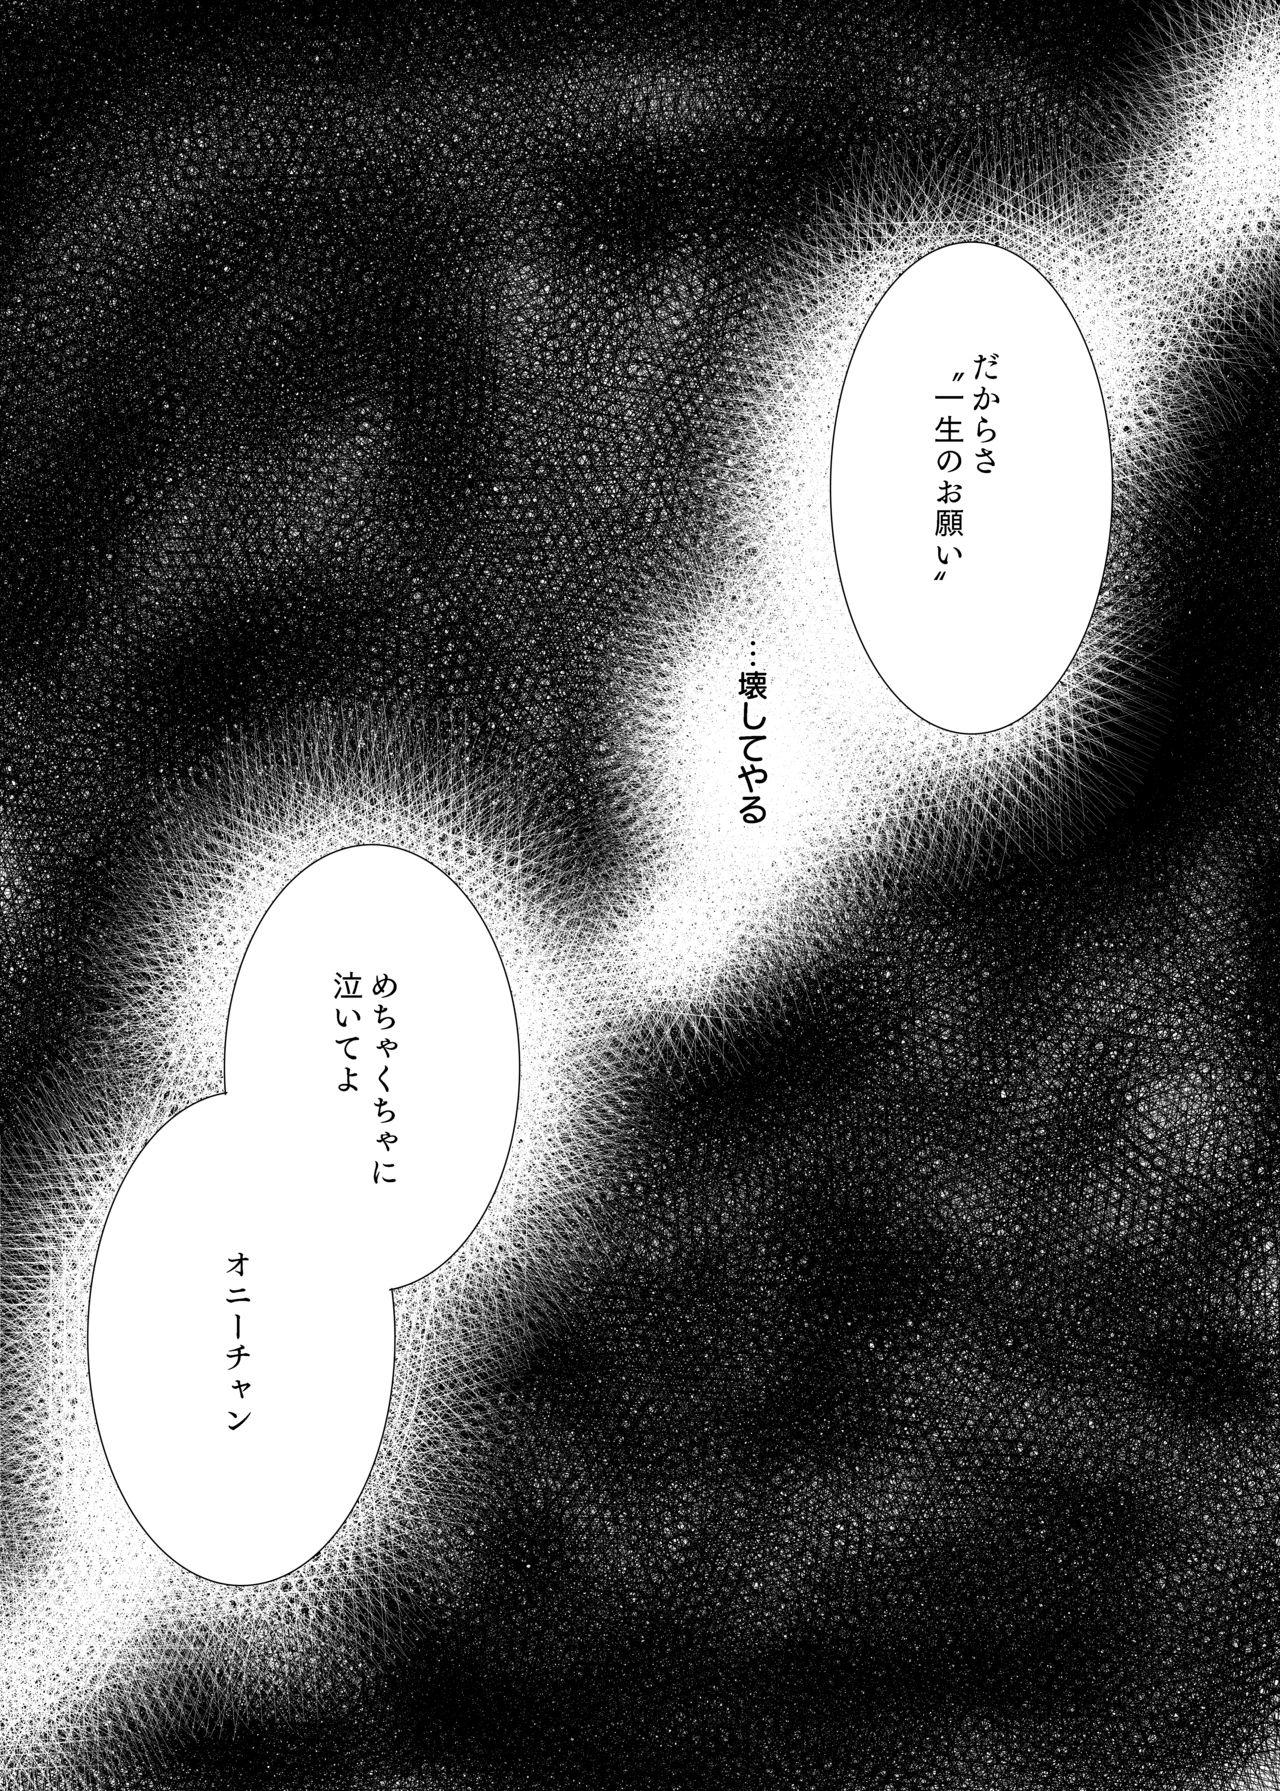 Que 愛のカタチは。 - Osomatsu san Perfect Tits - Page 10